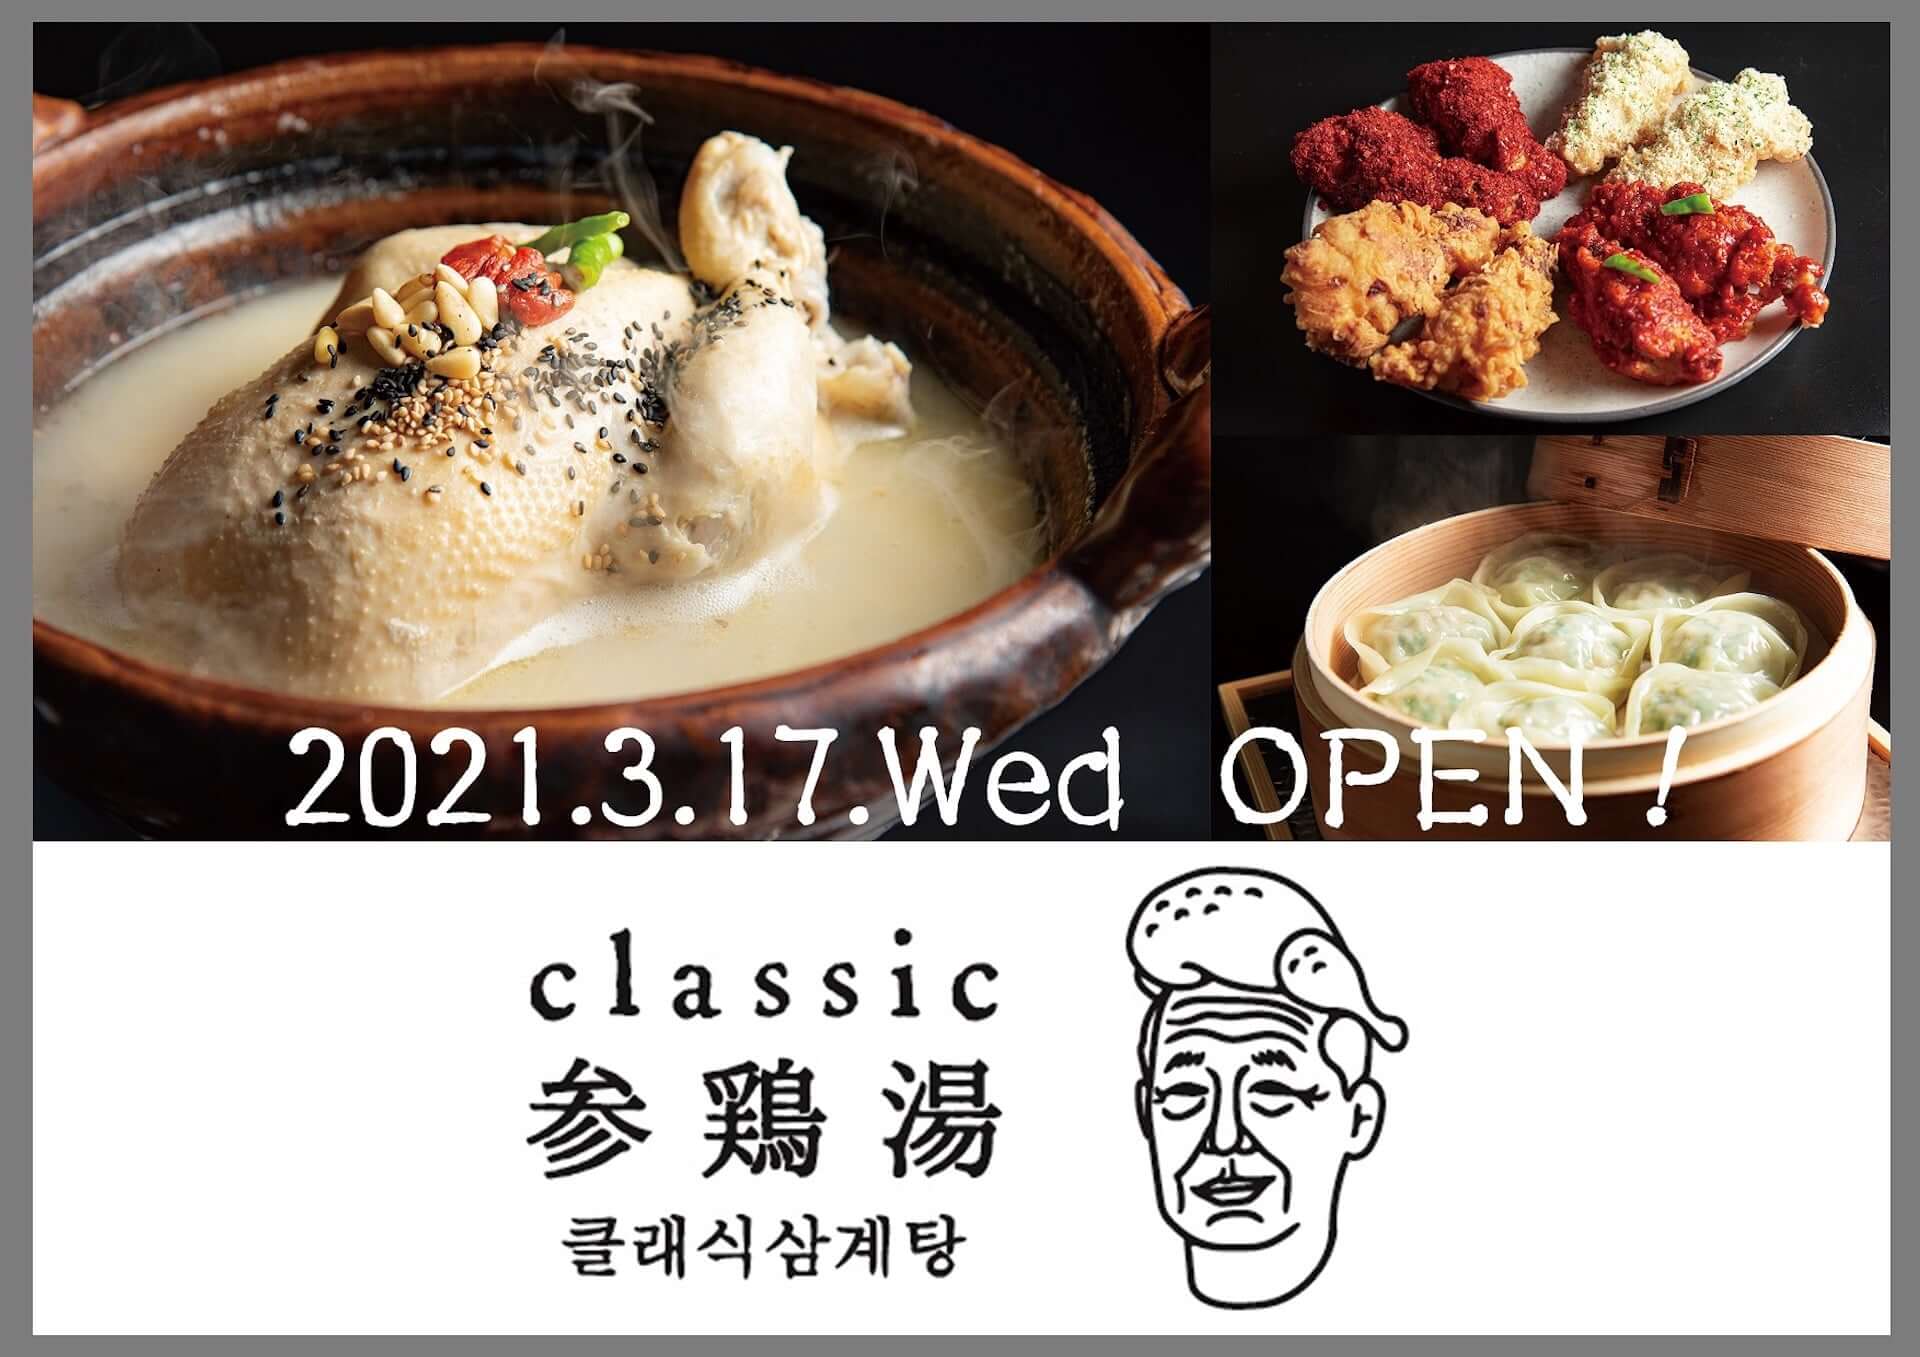 『現代版（ヒョンデ）参鶏湯』を楽しめる韓国料理屋「CLASSIC 参鶏湯」が恵⽐寿に新登場！薄皮蒸し餃子『マンドゥ』などオリジナルメニュー満載 gourmet210311_classic-korea_6-1920x1357